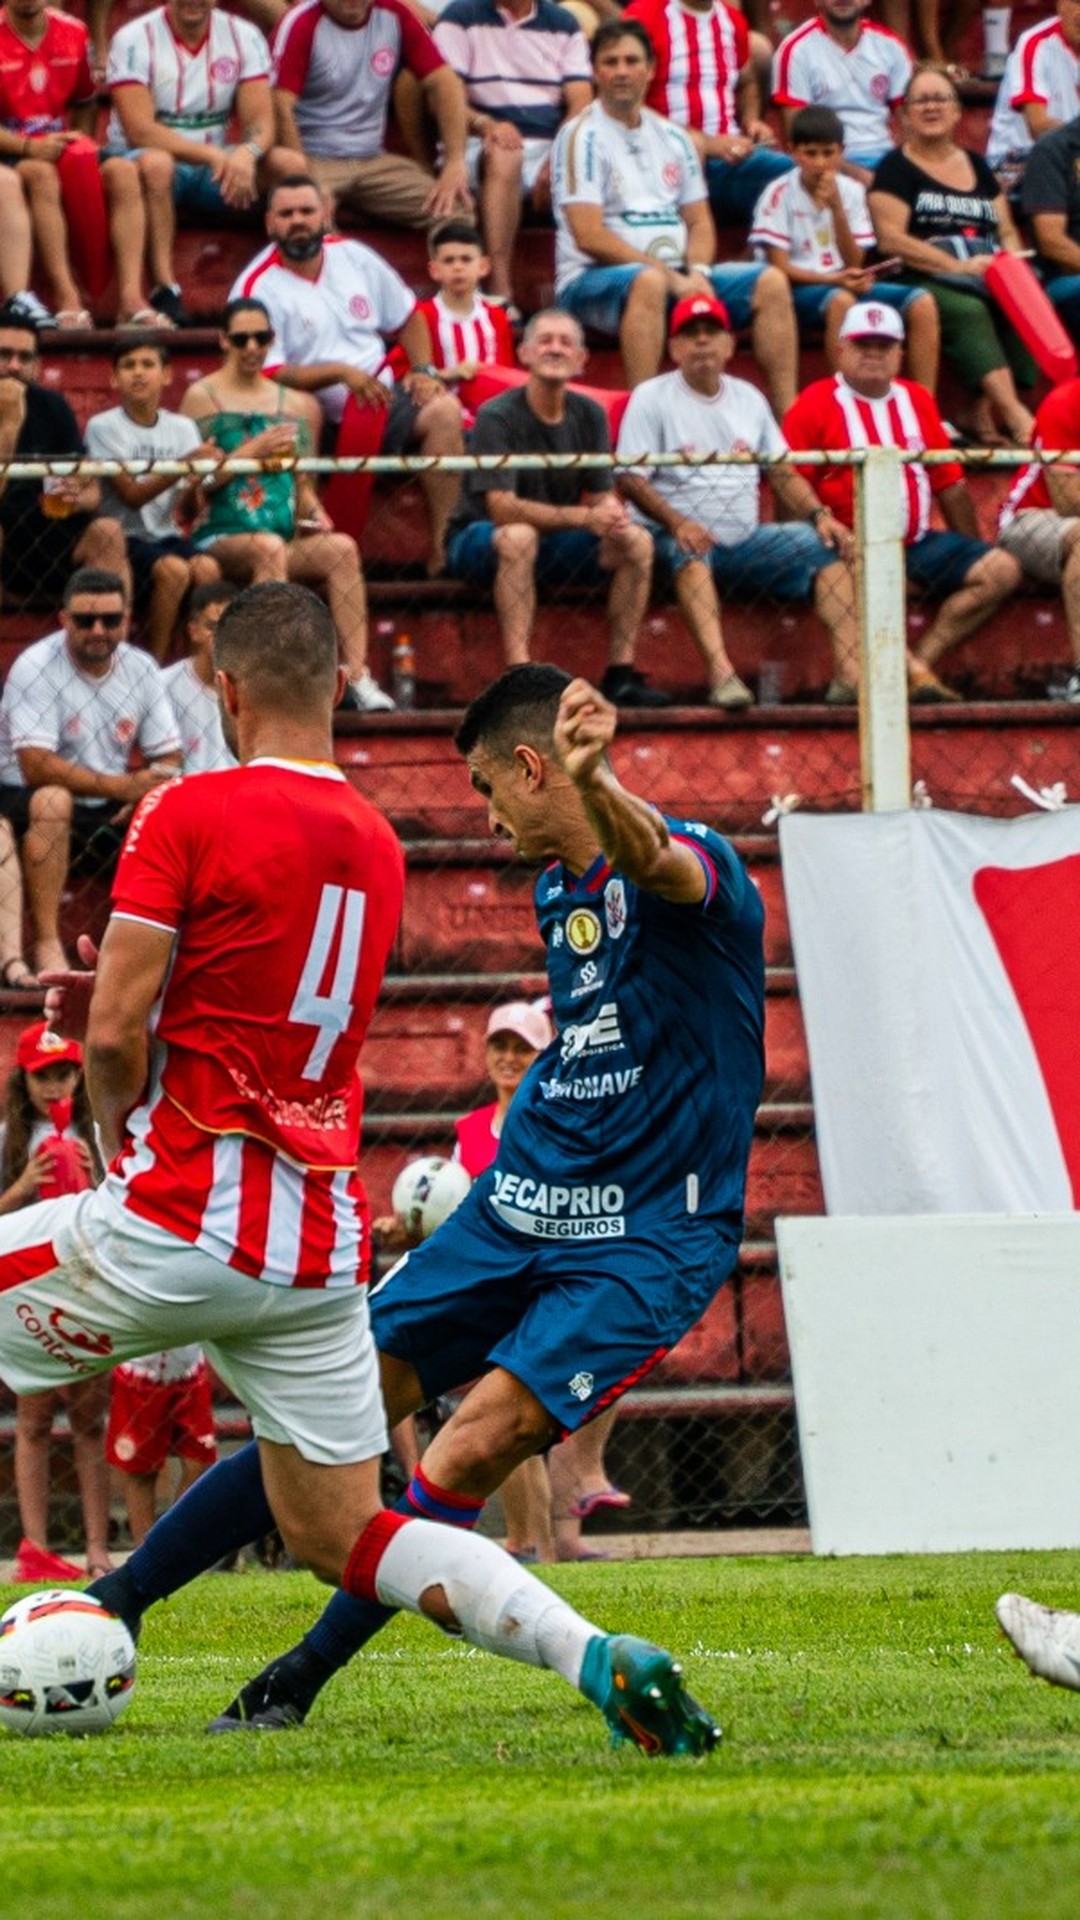 Concórdia x Avaí se enfrentam pelo jogo de volta da semifinal da Copa Santa  Catarina